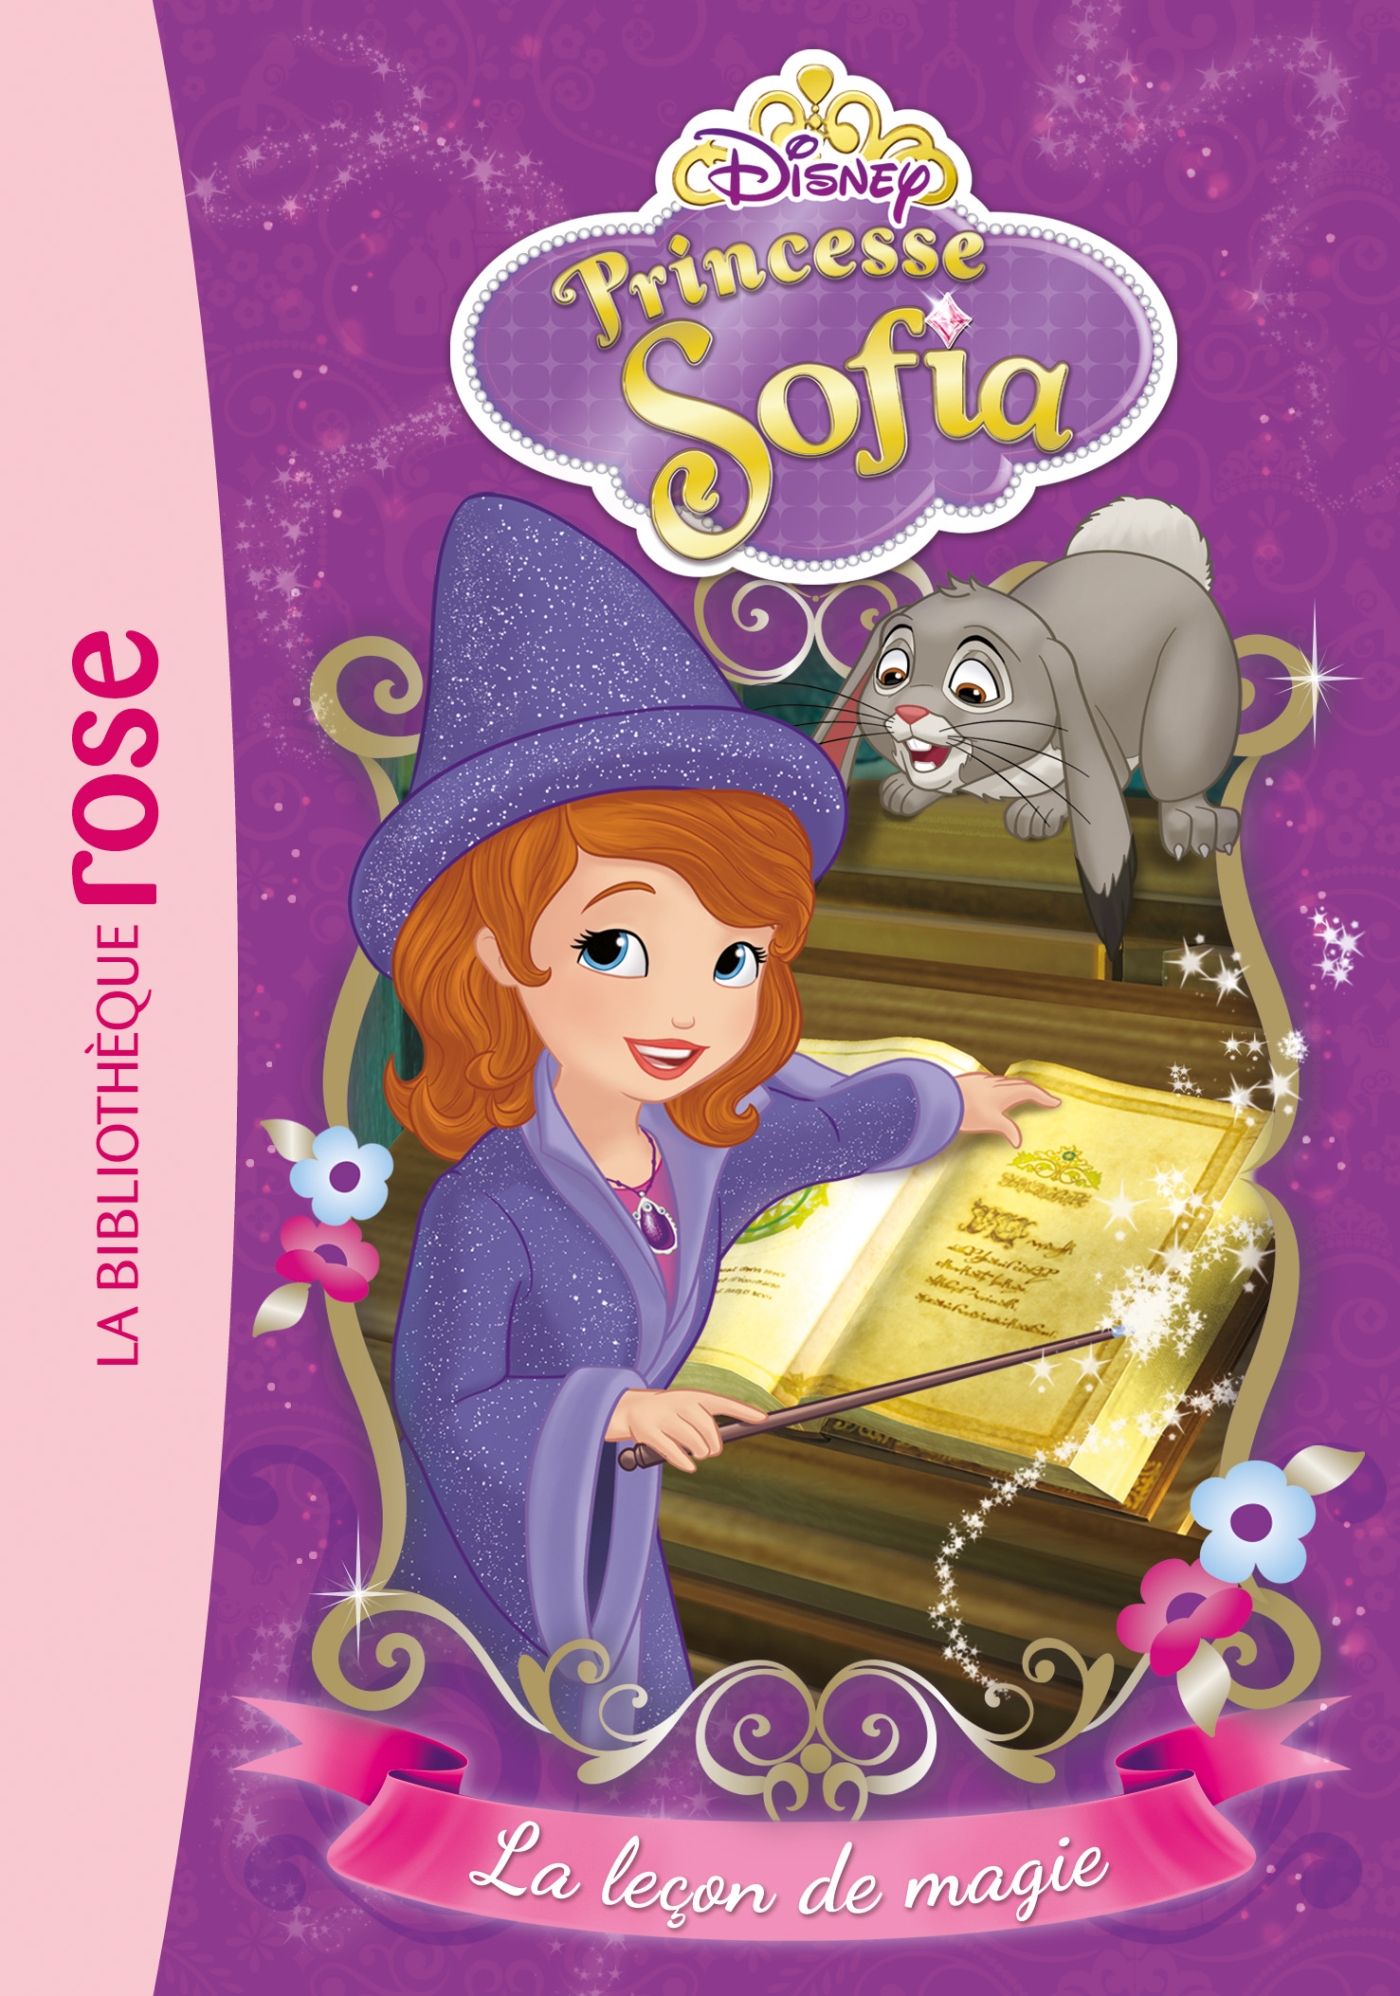 Sofia 01 - La leçon de magie